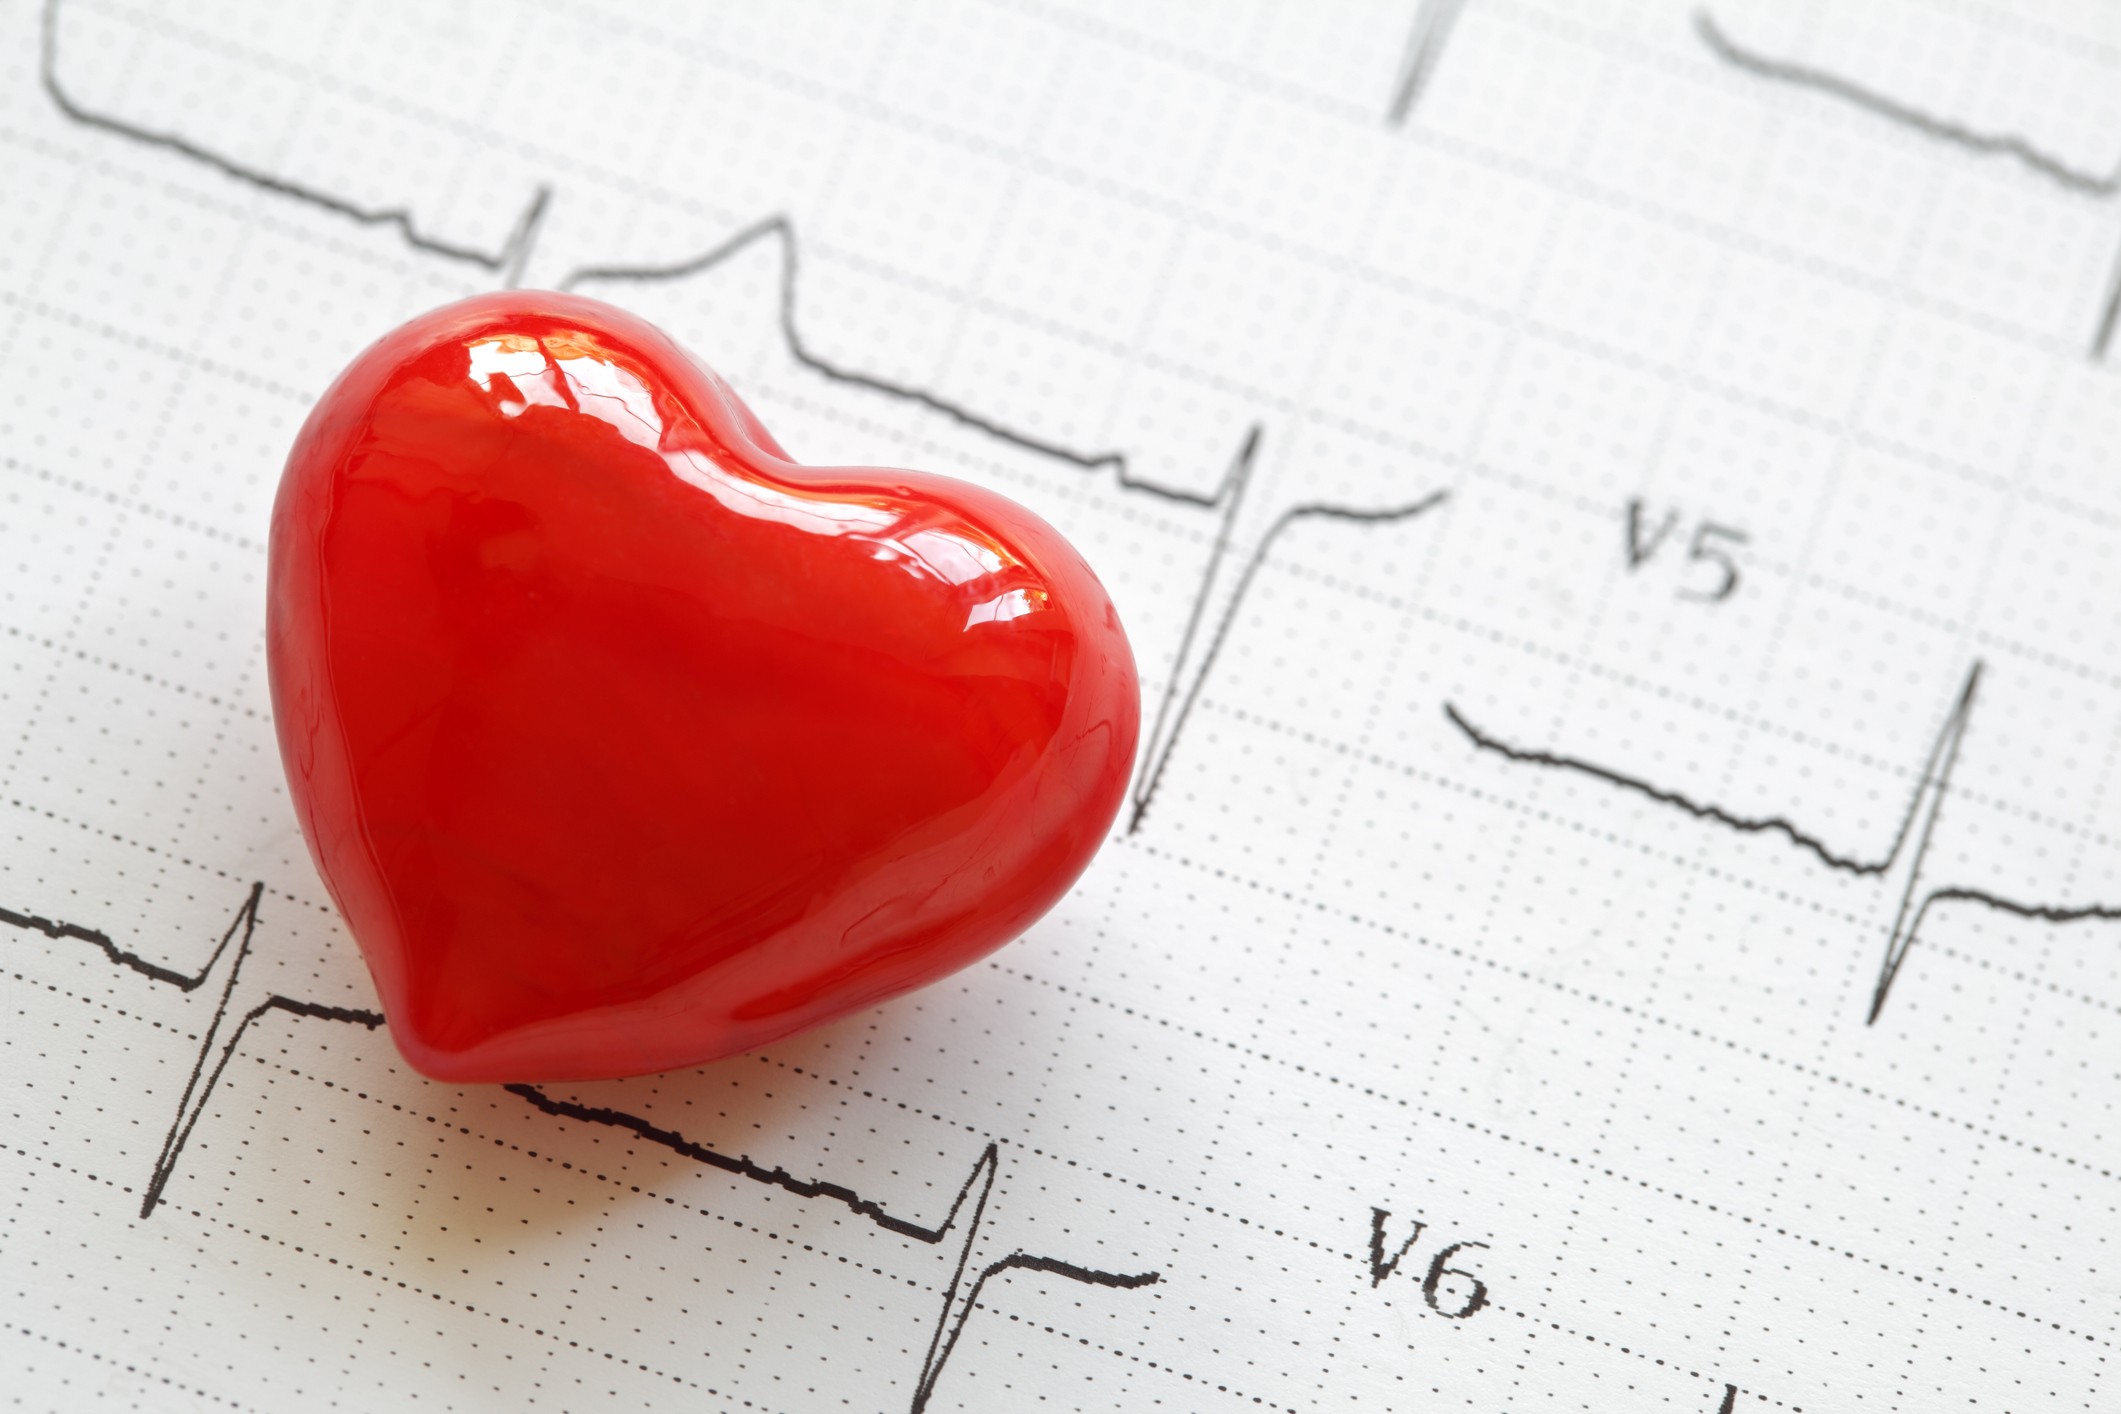 kapcsolat a száj egészsége és a szívbetegség között